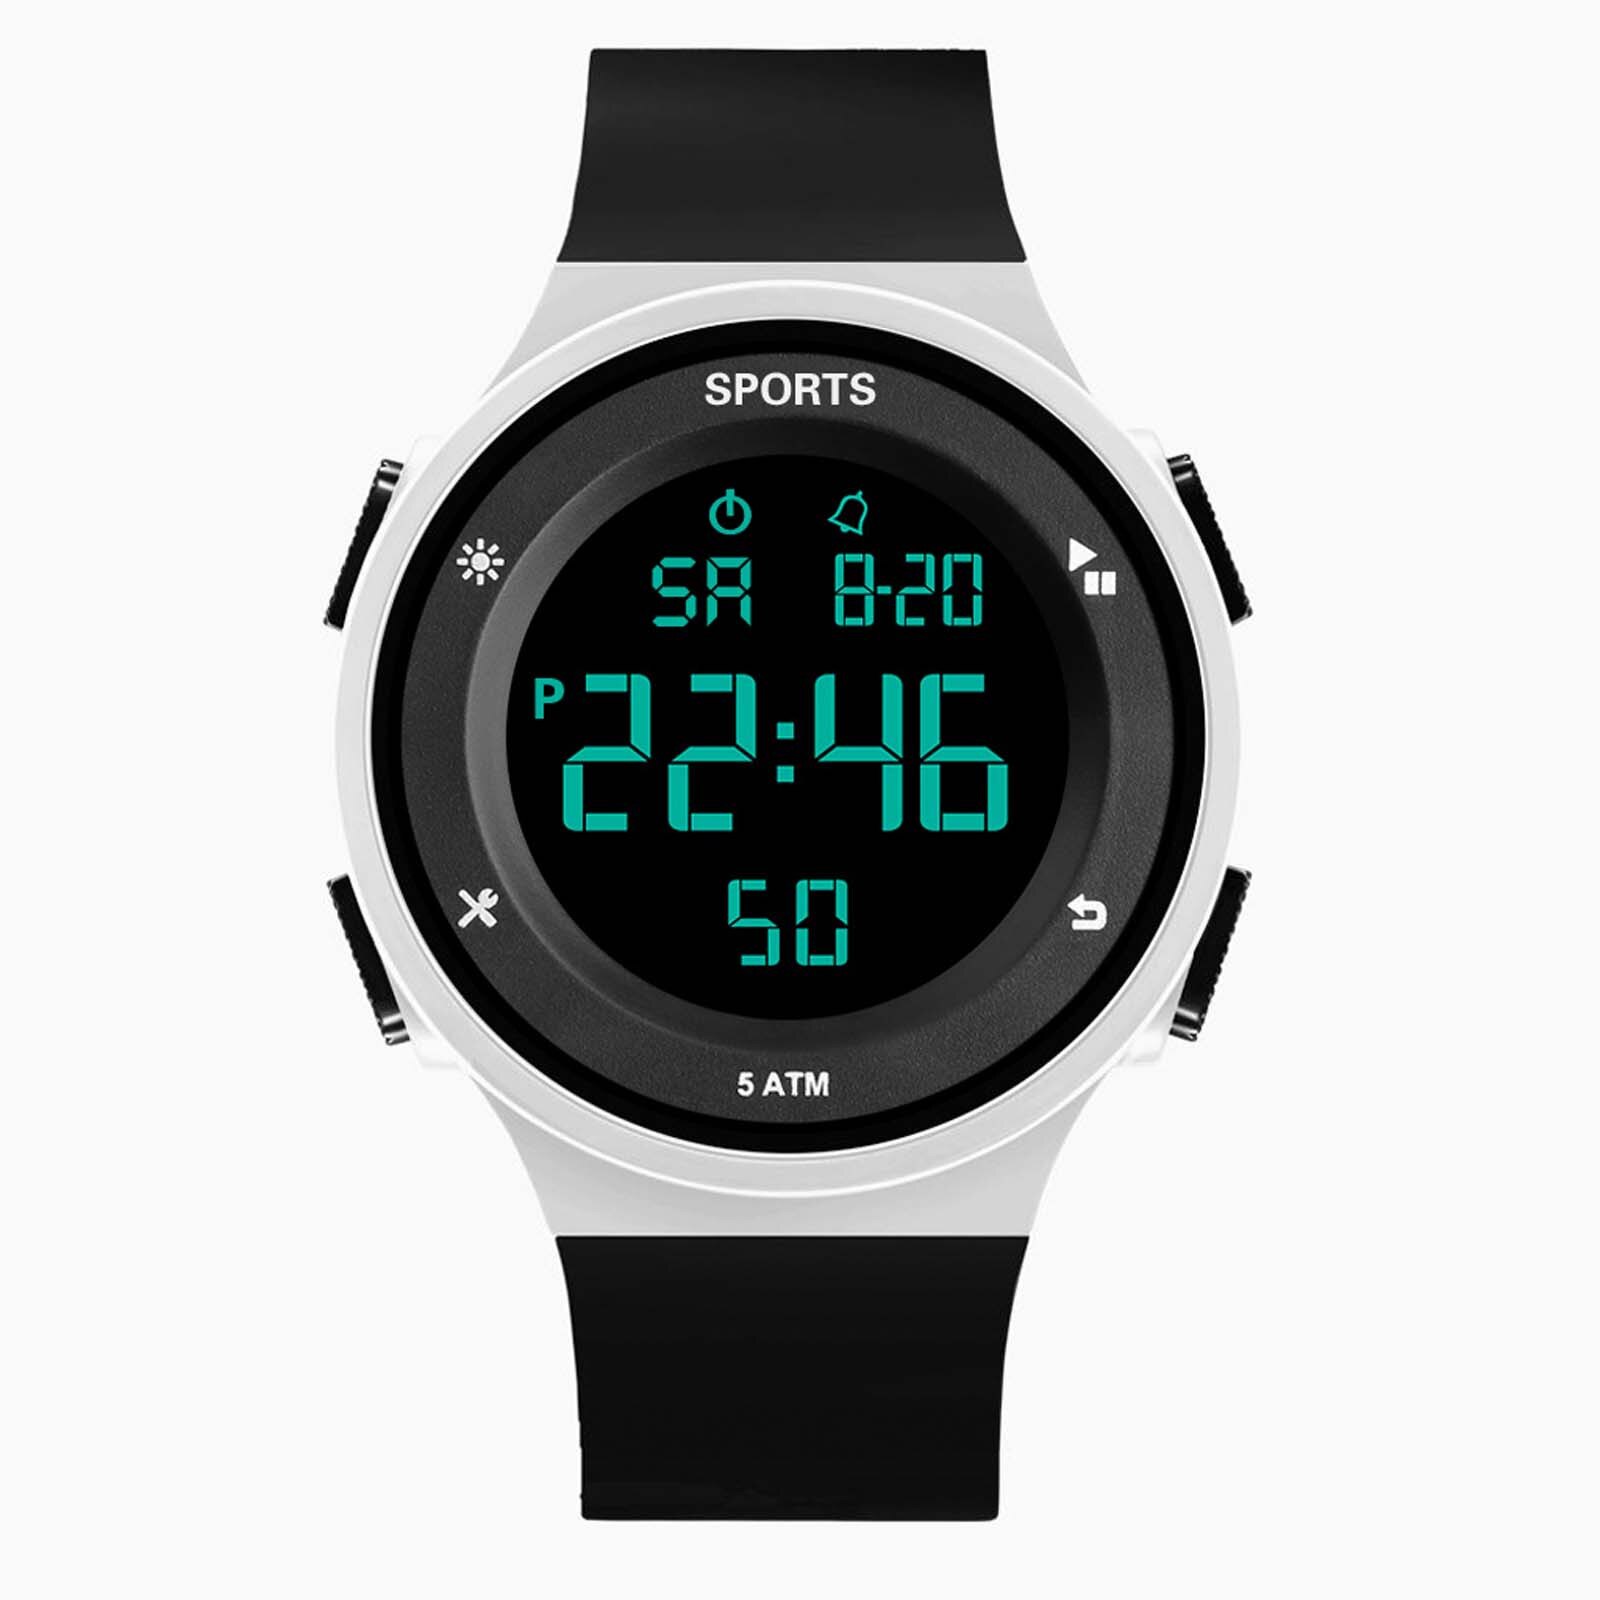 Luxe Heren Horloge Digitale Led Datum Sport Mannen Multifunctionele Waterdichte Outdoor Elektronische Mannen Digitale Horloges Reloj Hombre: Multicolor